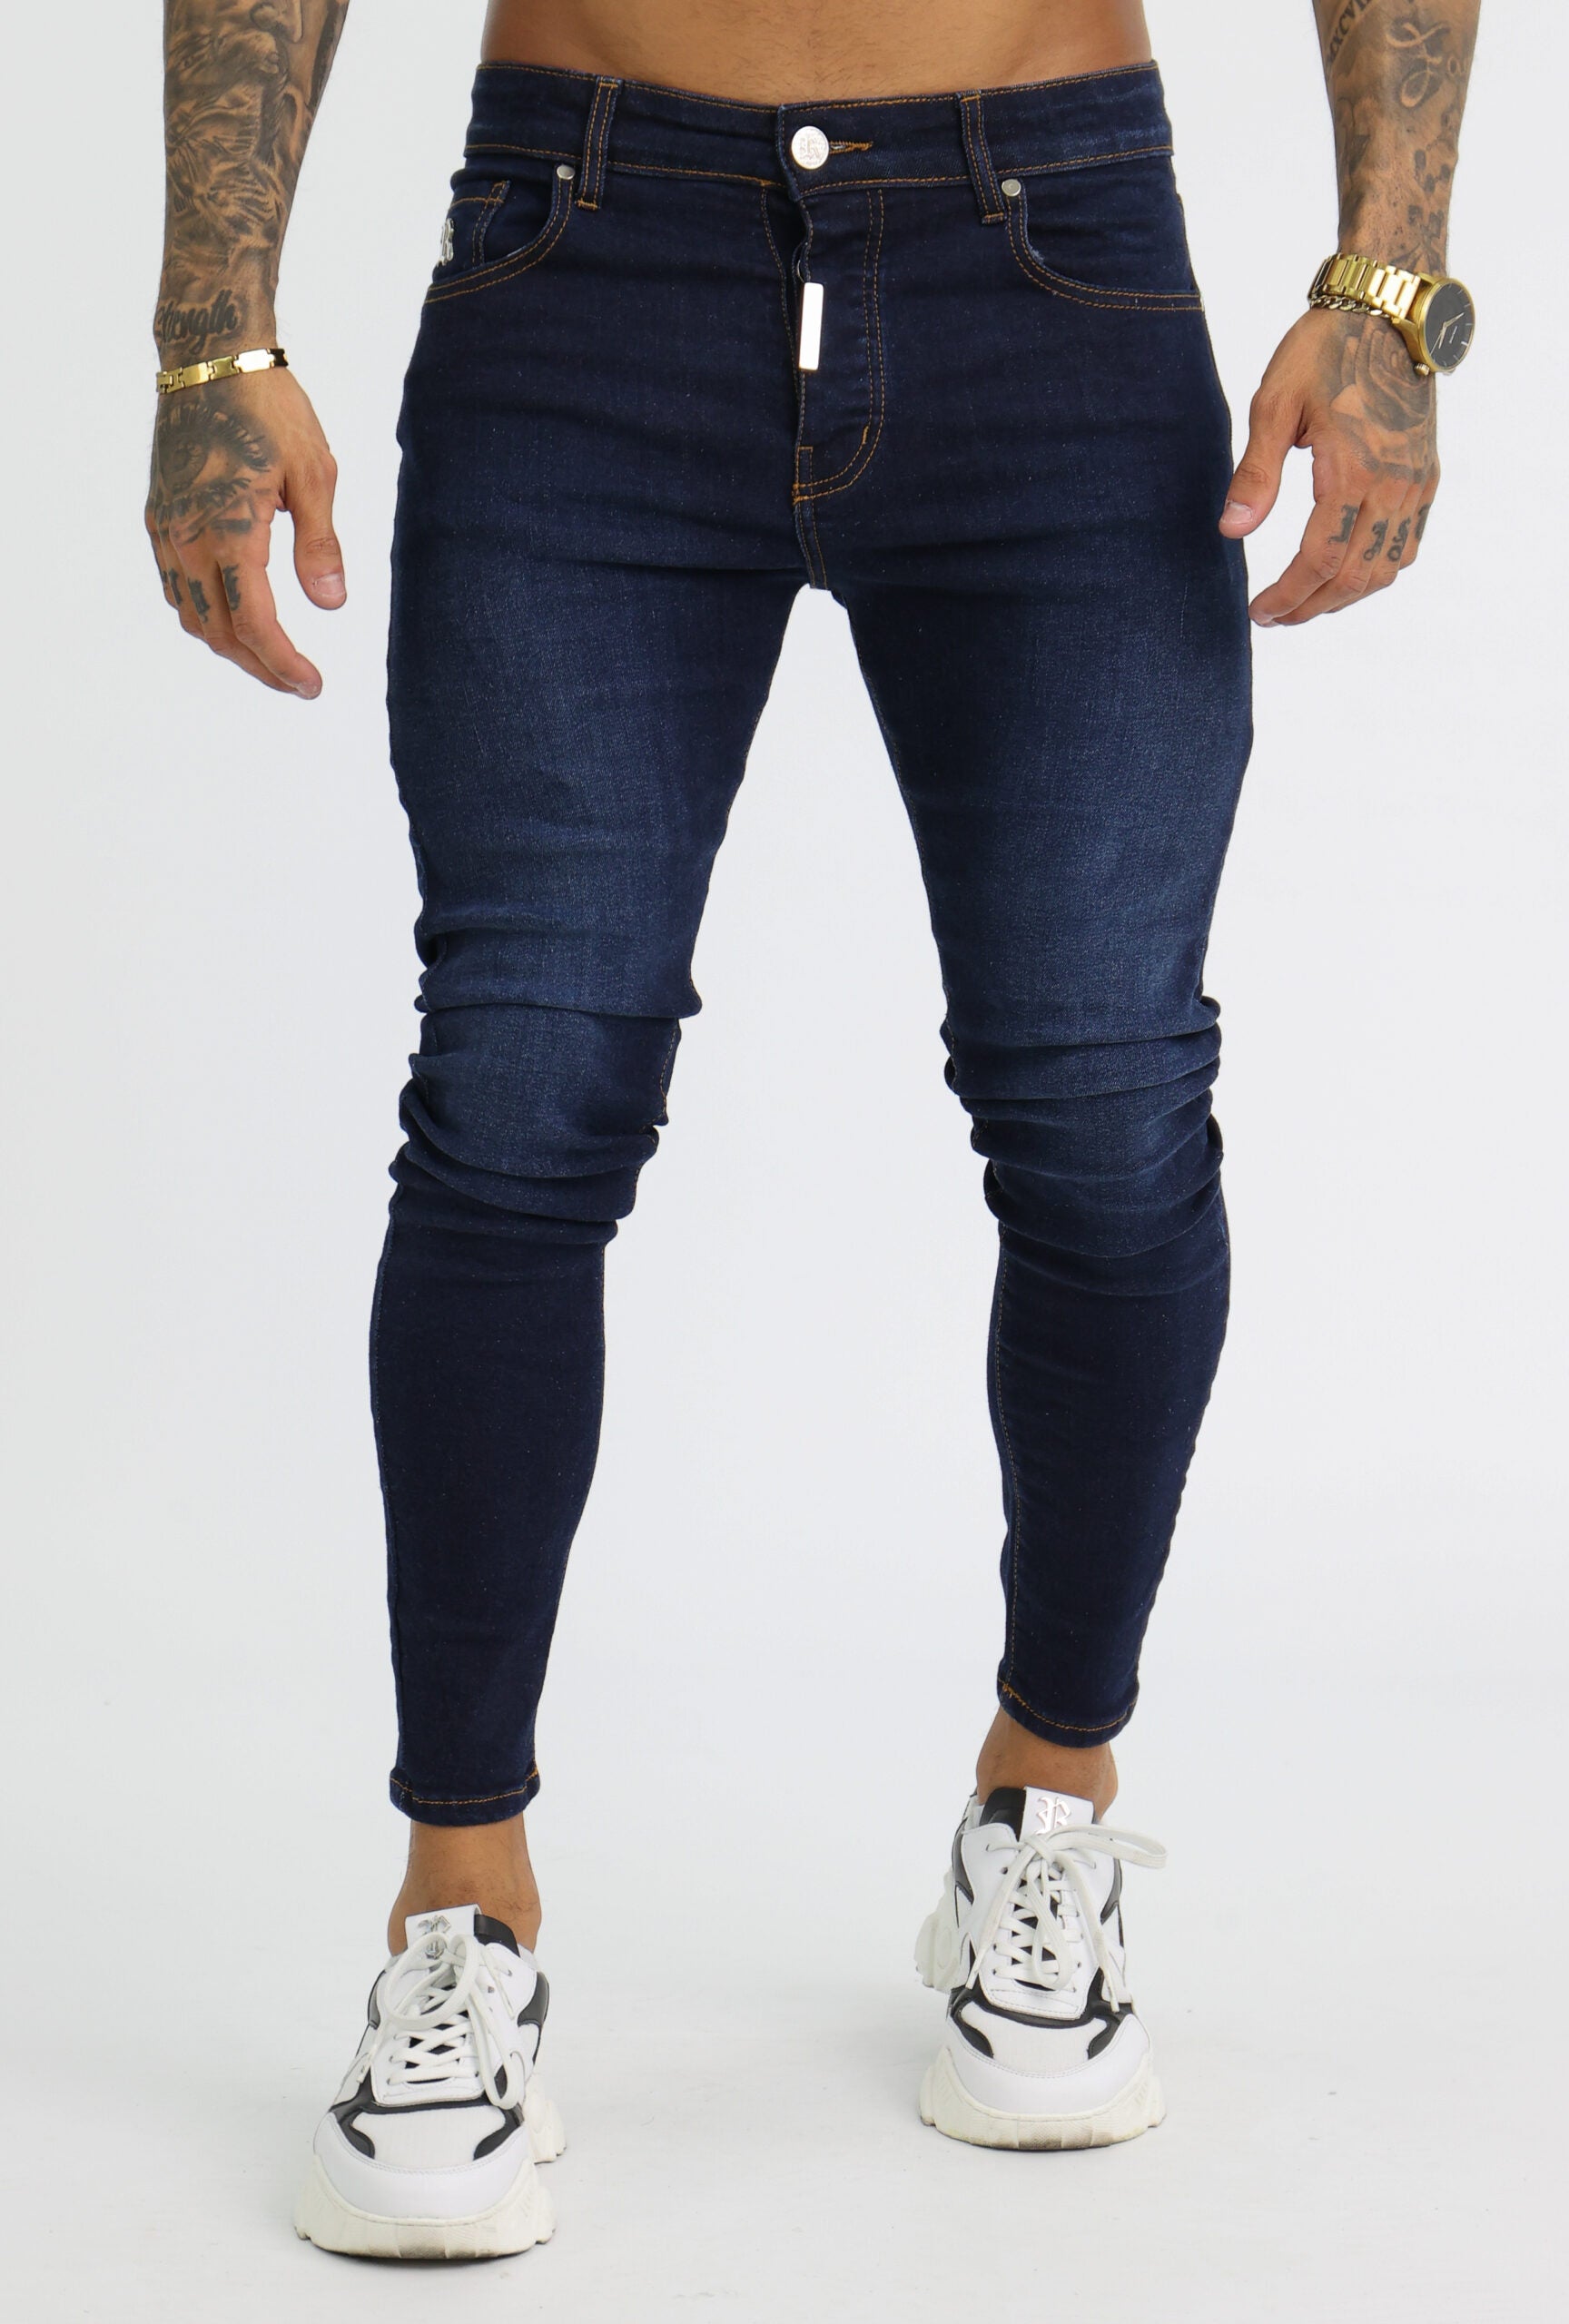 Vinco Jeans